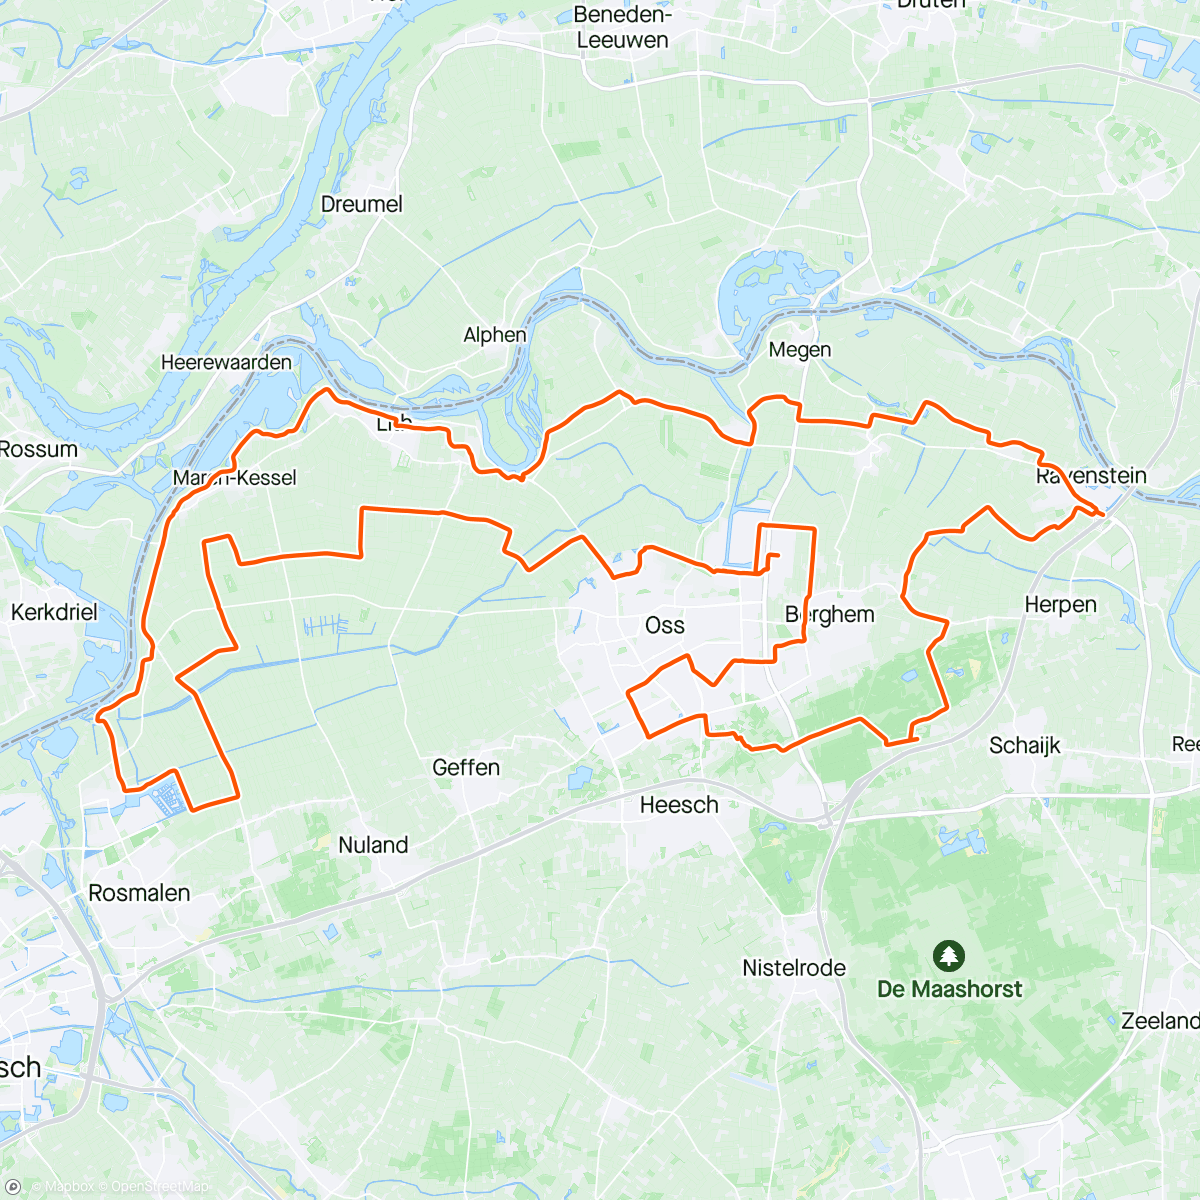 「Tegeltjoss」活動的地圖